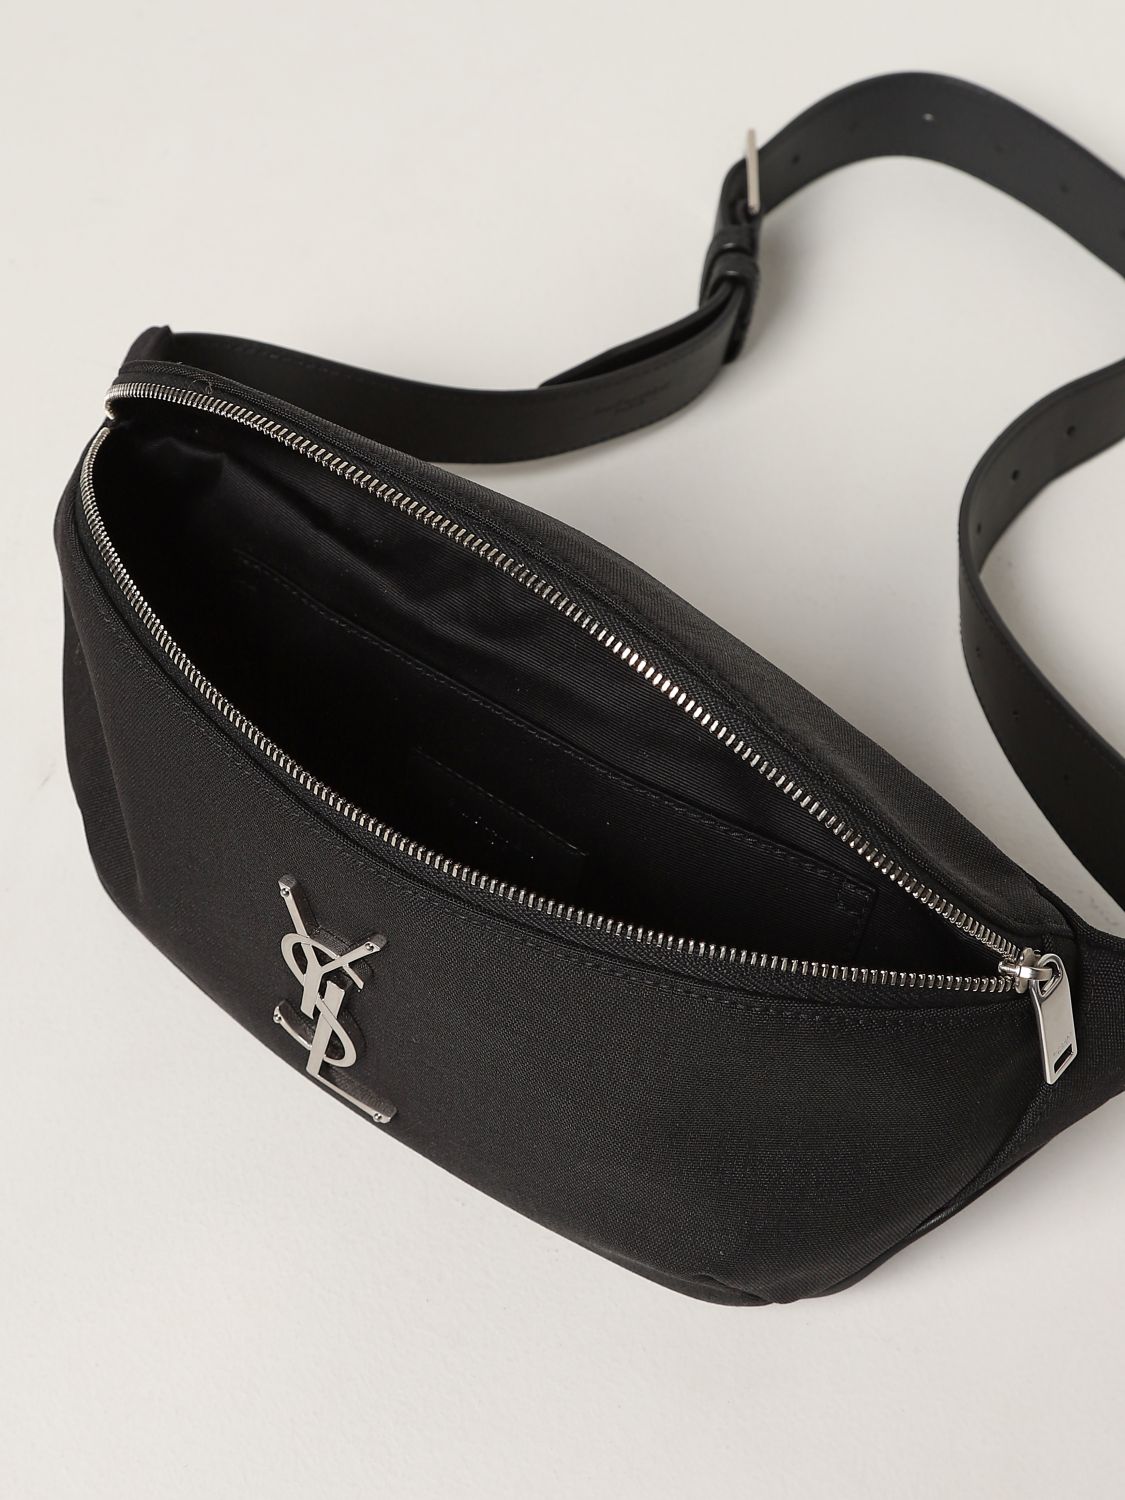 Men's Belts & Belt Bags, Vintage Leather, Saint Laurent